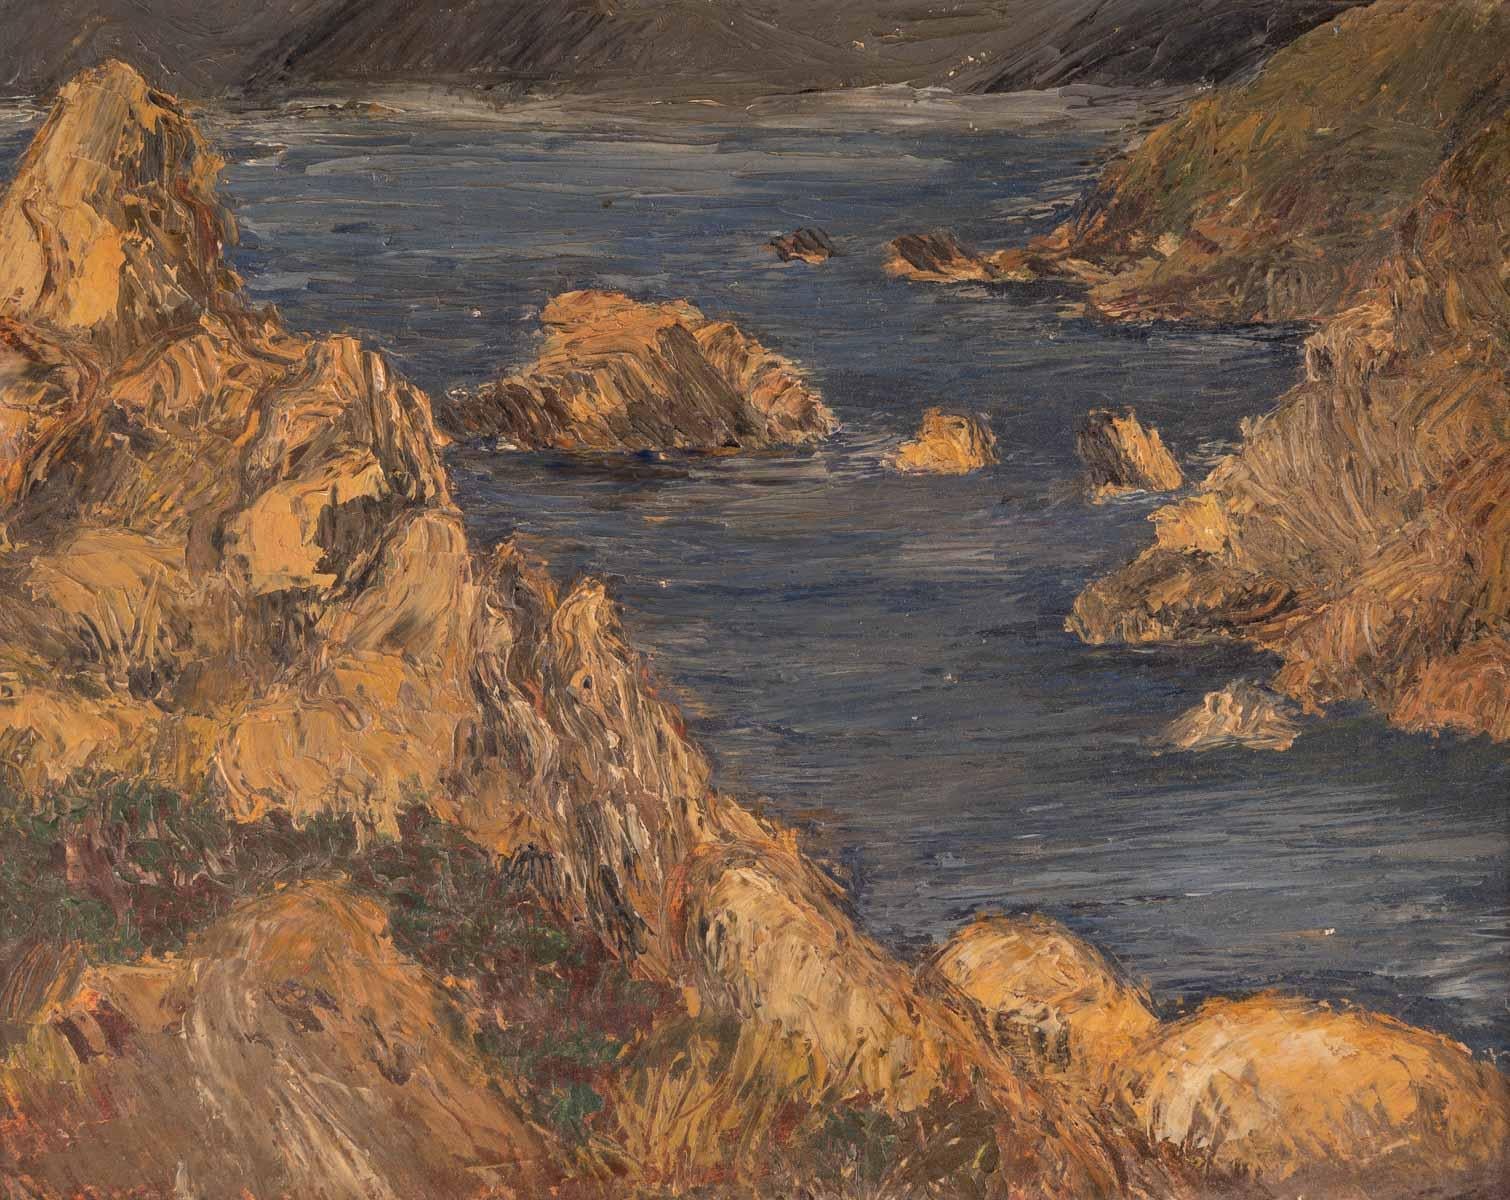 Landscape of the cliffs, 20th century.
Painting on cardboard, framed
Evelyne Luez, Paris school.
Measures: H: 37 cm, W: 51 cm, D: 1.5 cm.